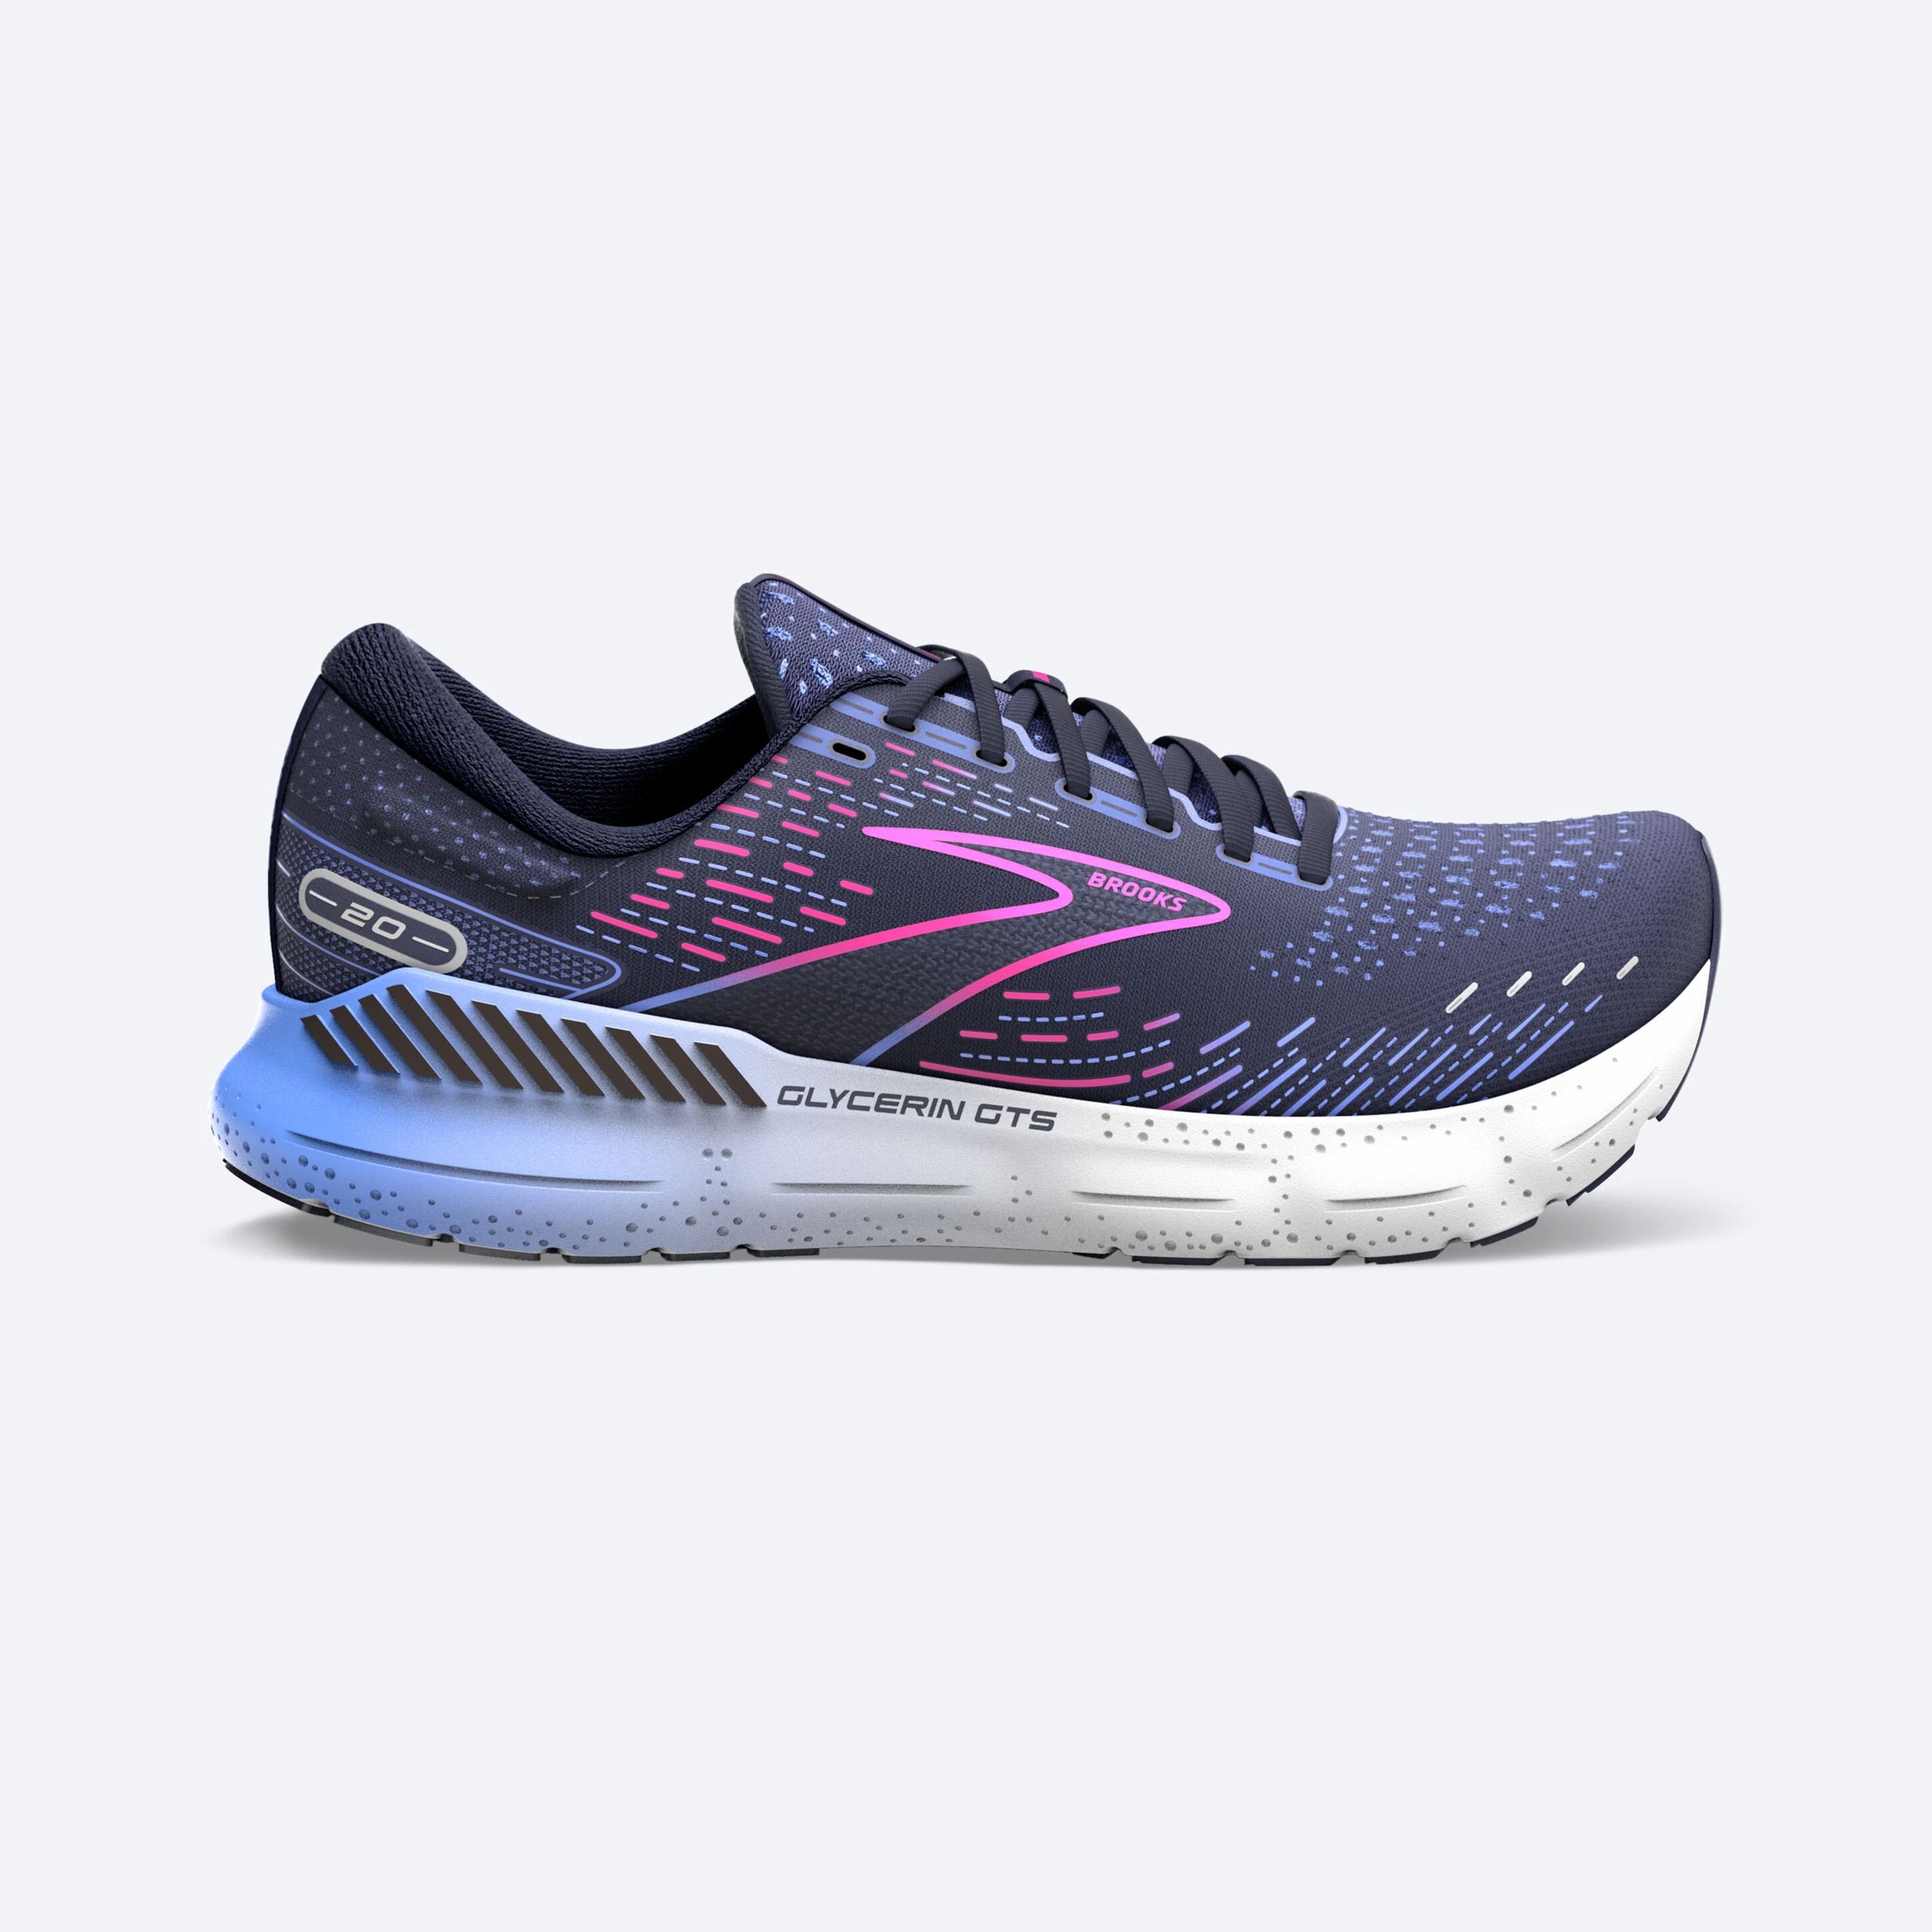 Chaussure de running Glycerin GTS 20 - Peacoat / Blue / Pink